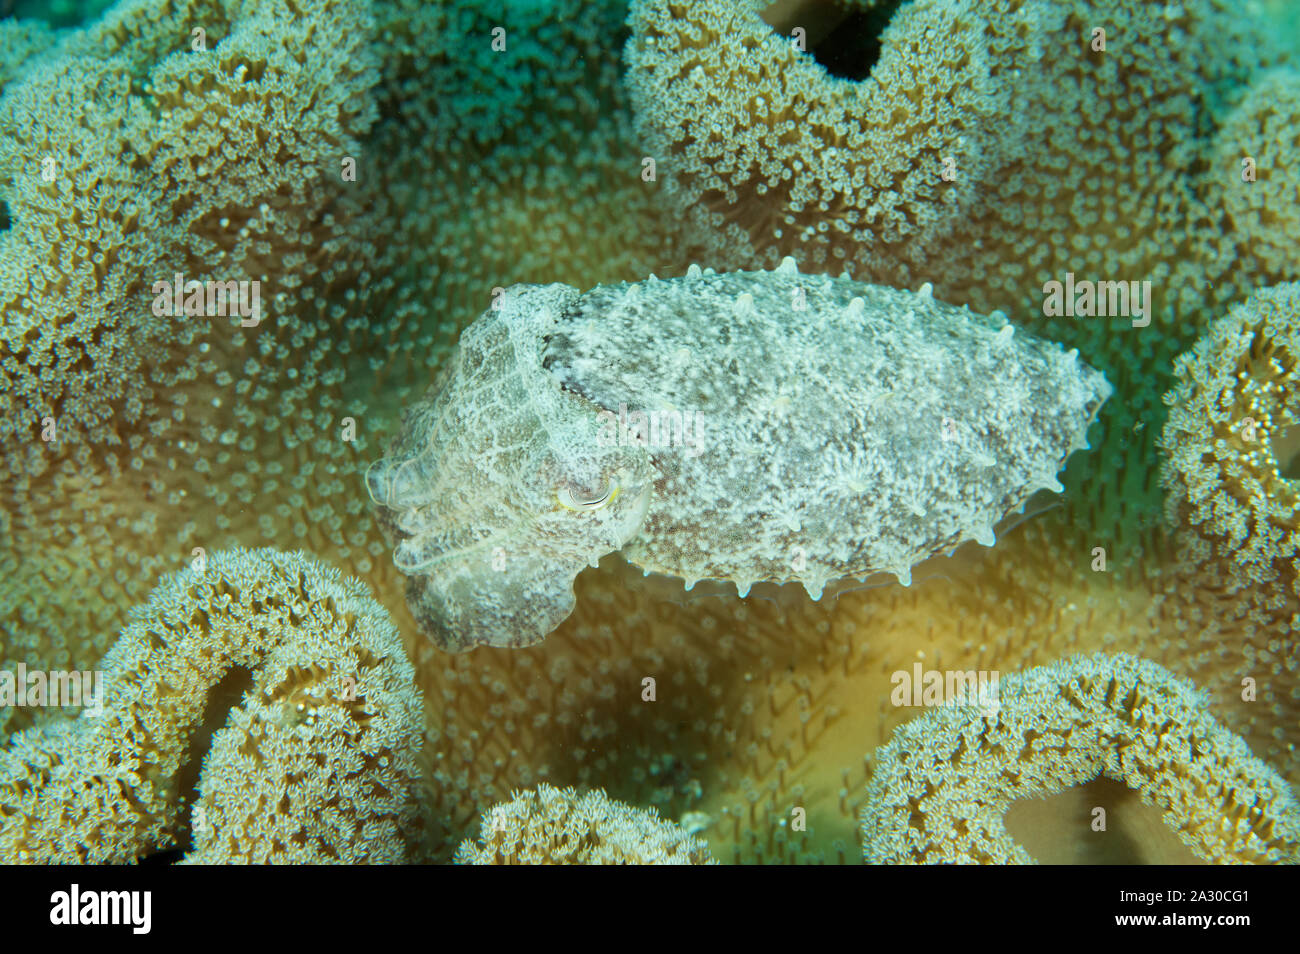 Pygmy oder Stumpy spined Tintenfisch, Sepia bandensis, versteckt in einem Leder coral Sulawesi, Indonesien. Stockfoto